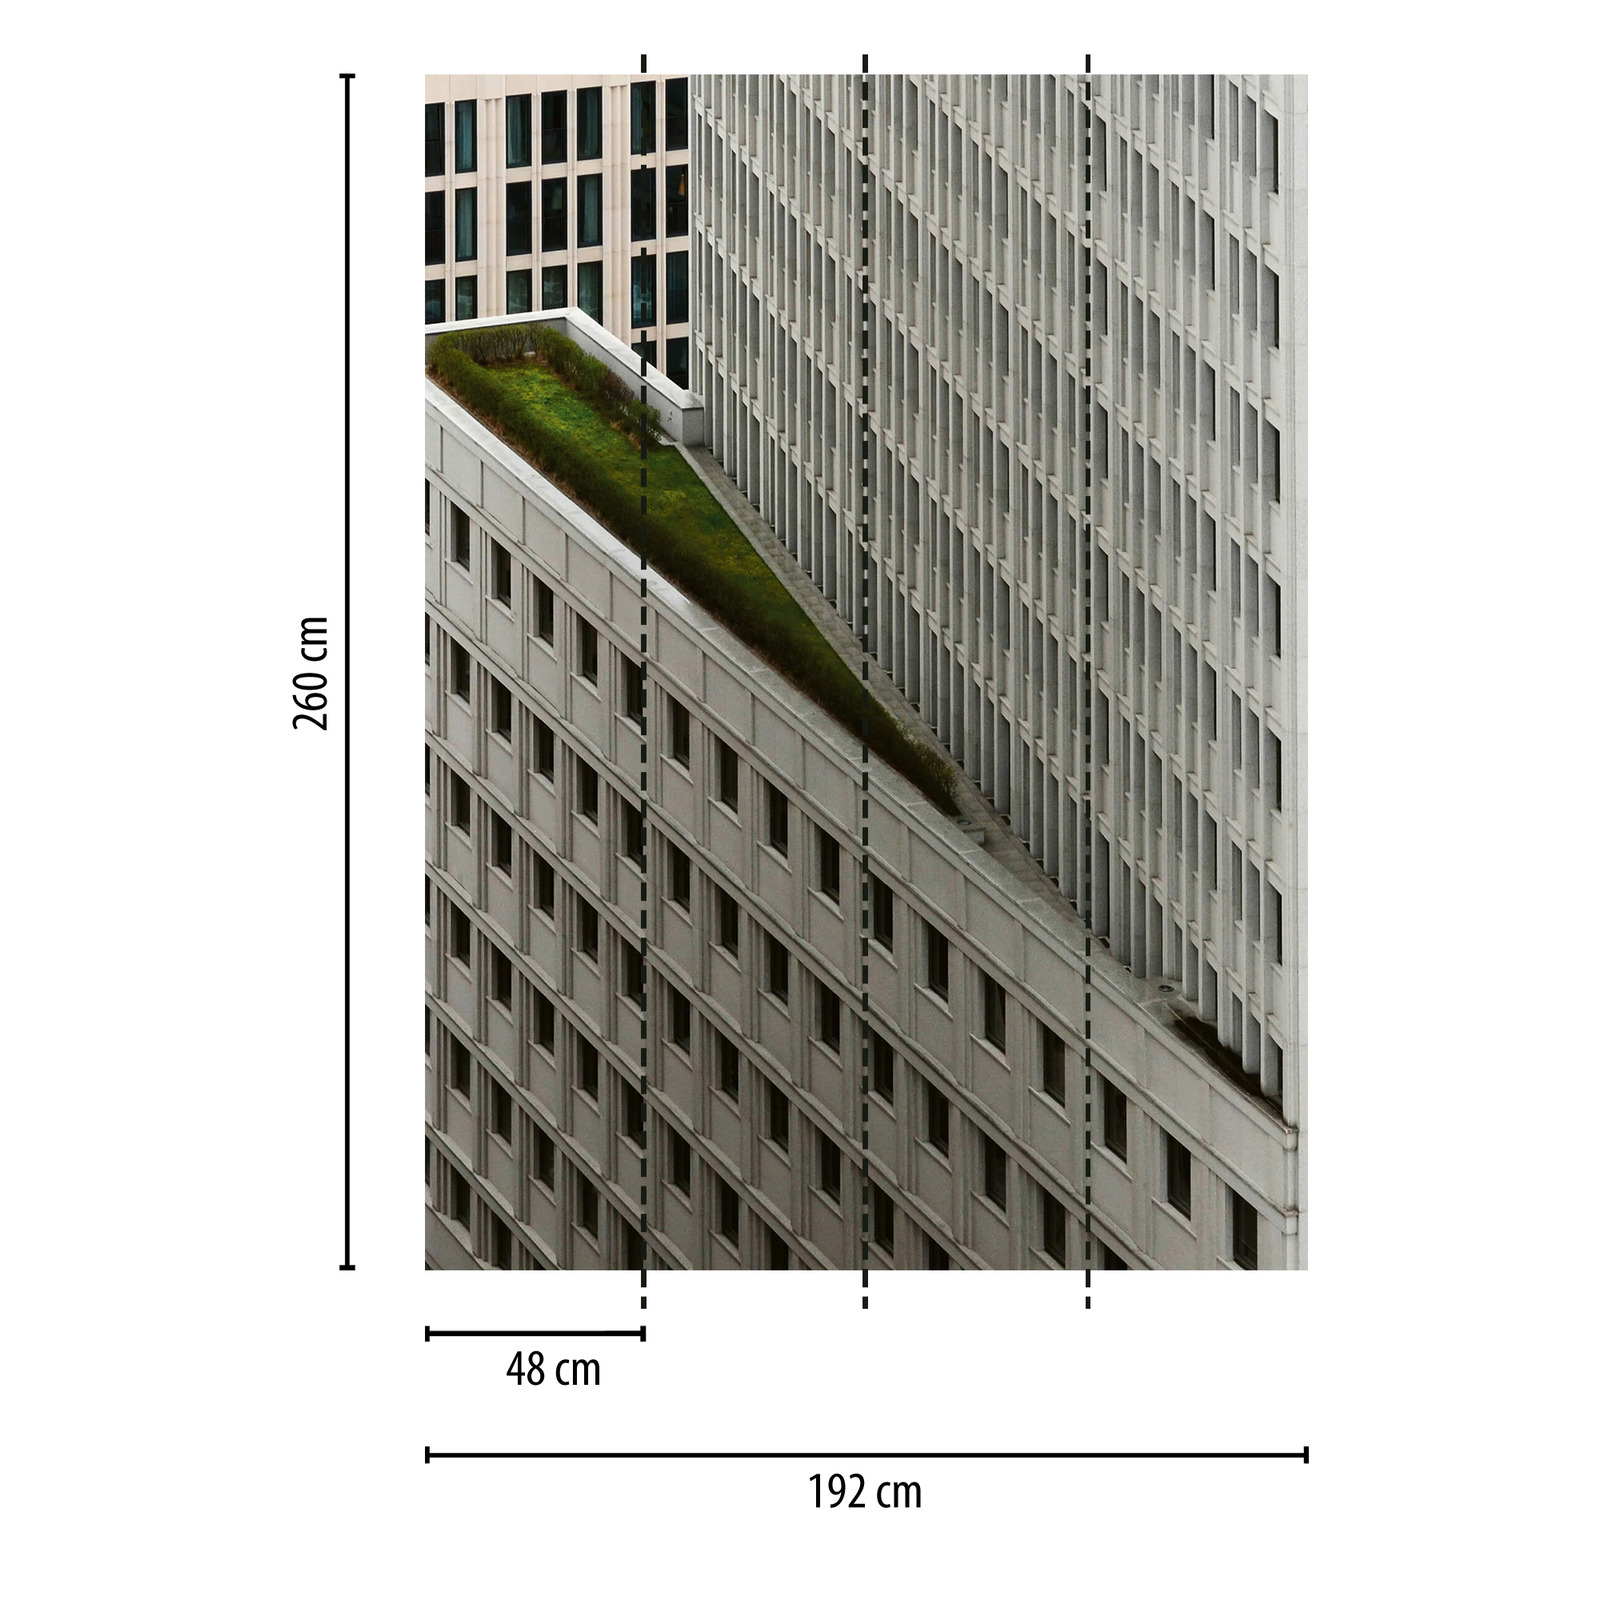             Mural de rascacielos blanco - Gris, Blanco, Negro
        